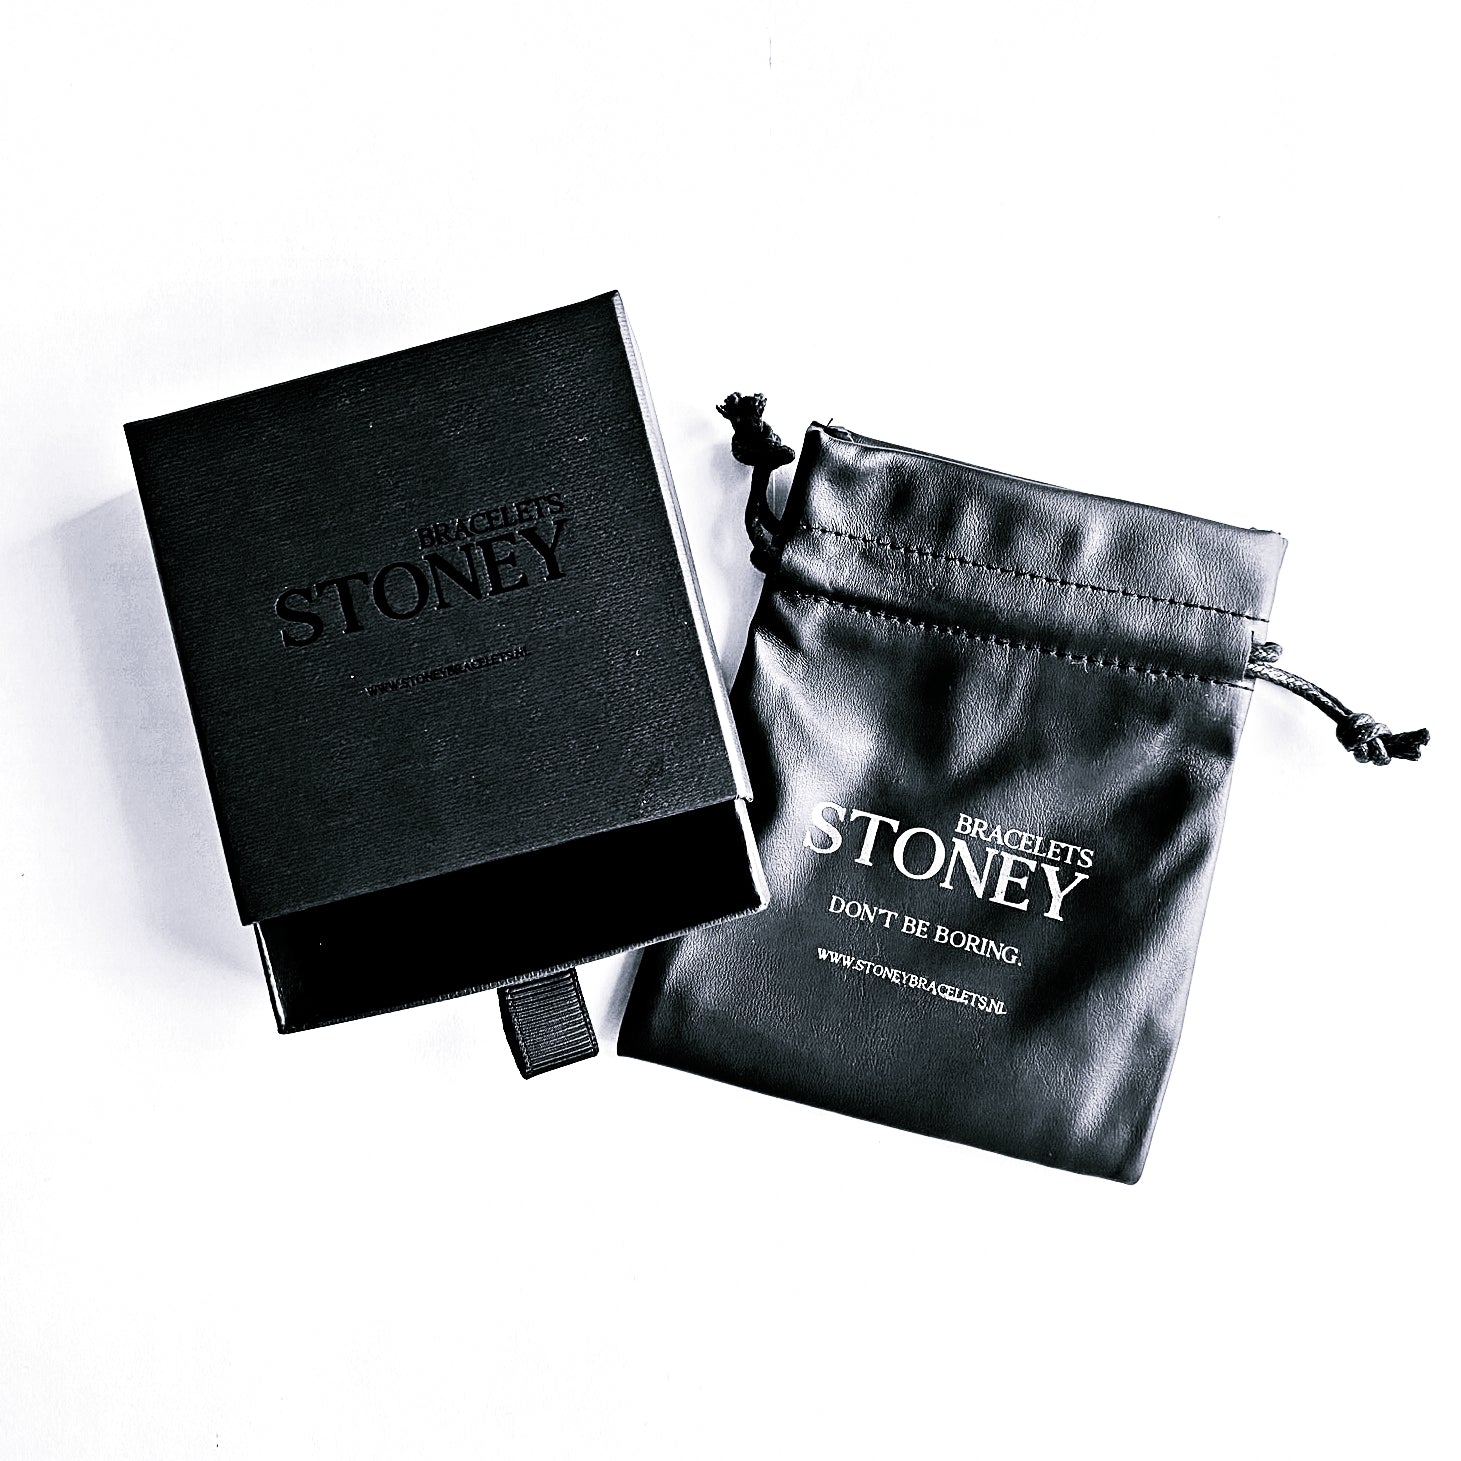 Een zwart etui met het woord Stoney Bracelets erop, perfect voor het opbergen van je Copper Sand Stones (6mm) of armbanden.